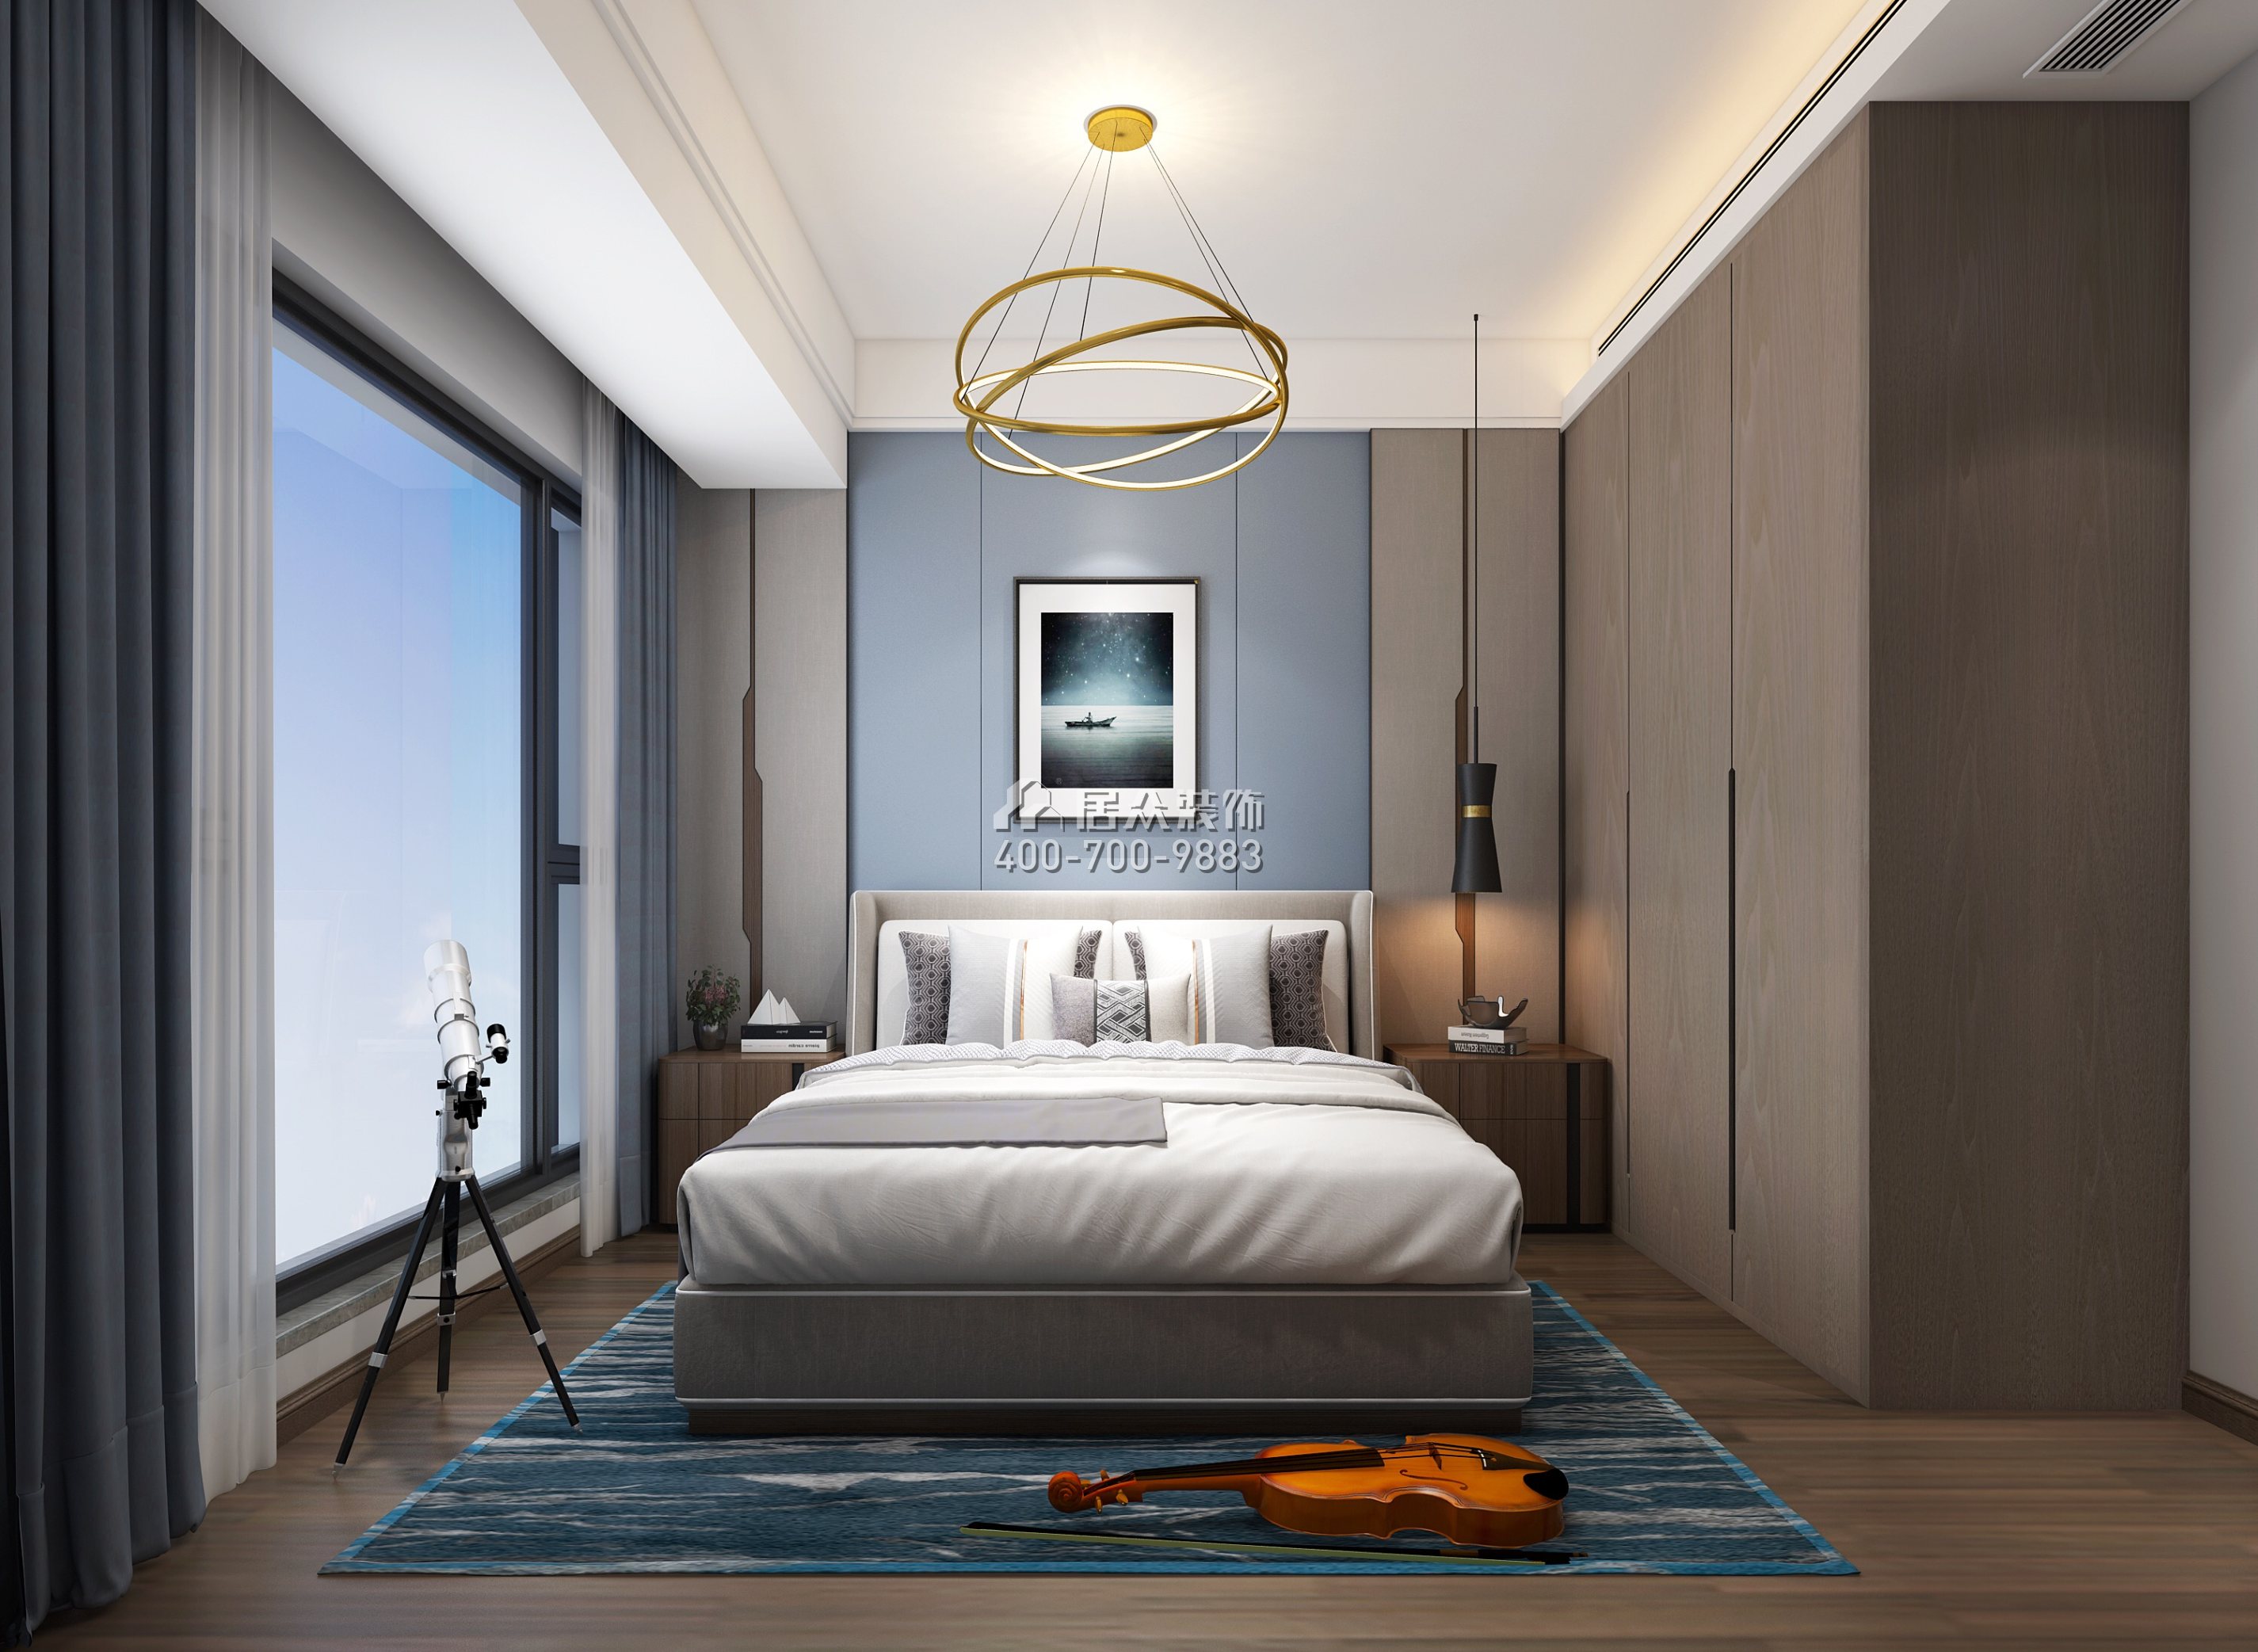 联投东方华府二期150平方米现代简约风格平层户型卧室装修效果图